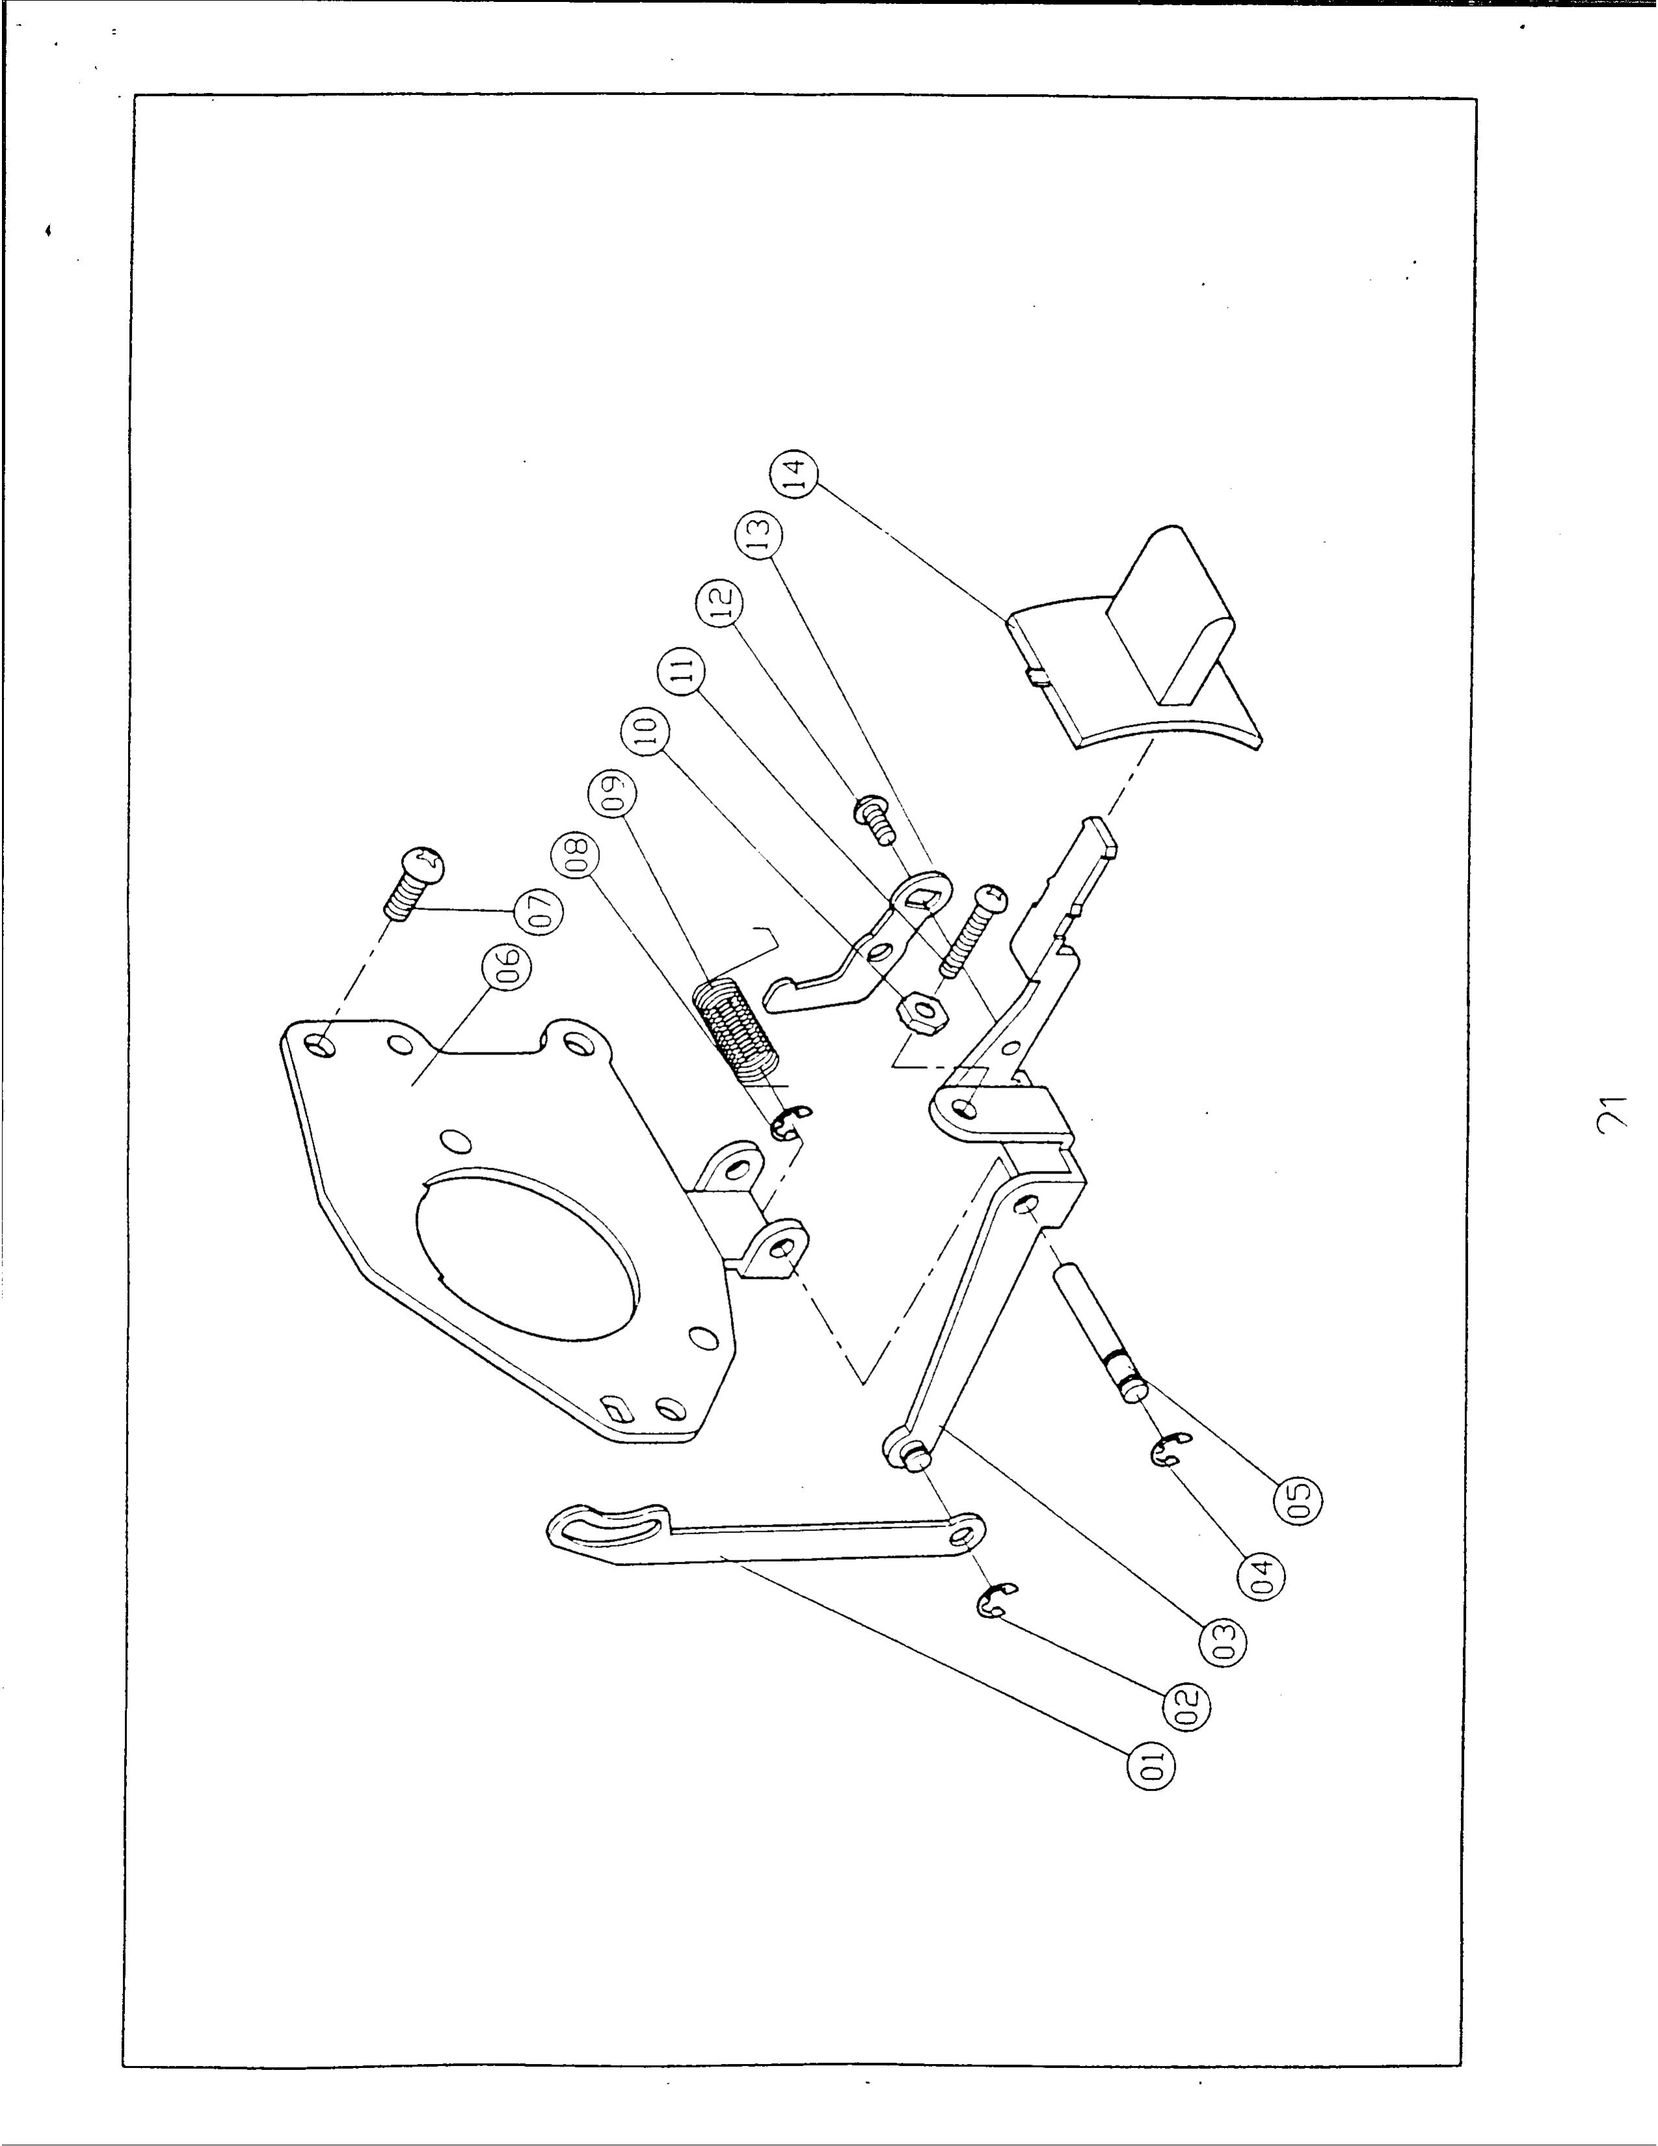 Singer 1019 Sewing Machine User Manual (Page 23)